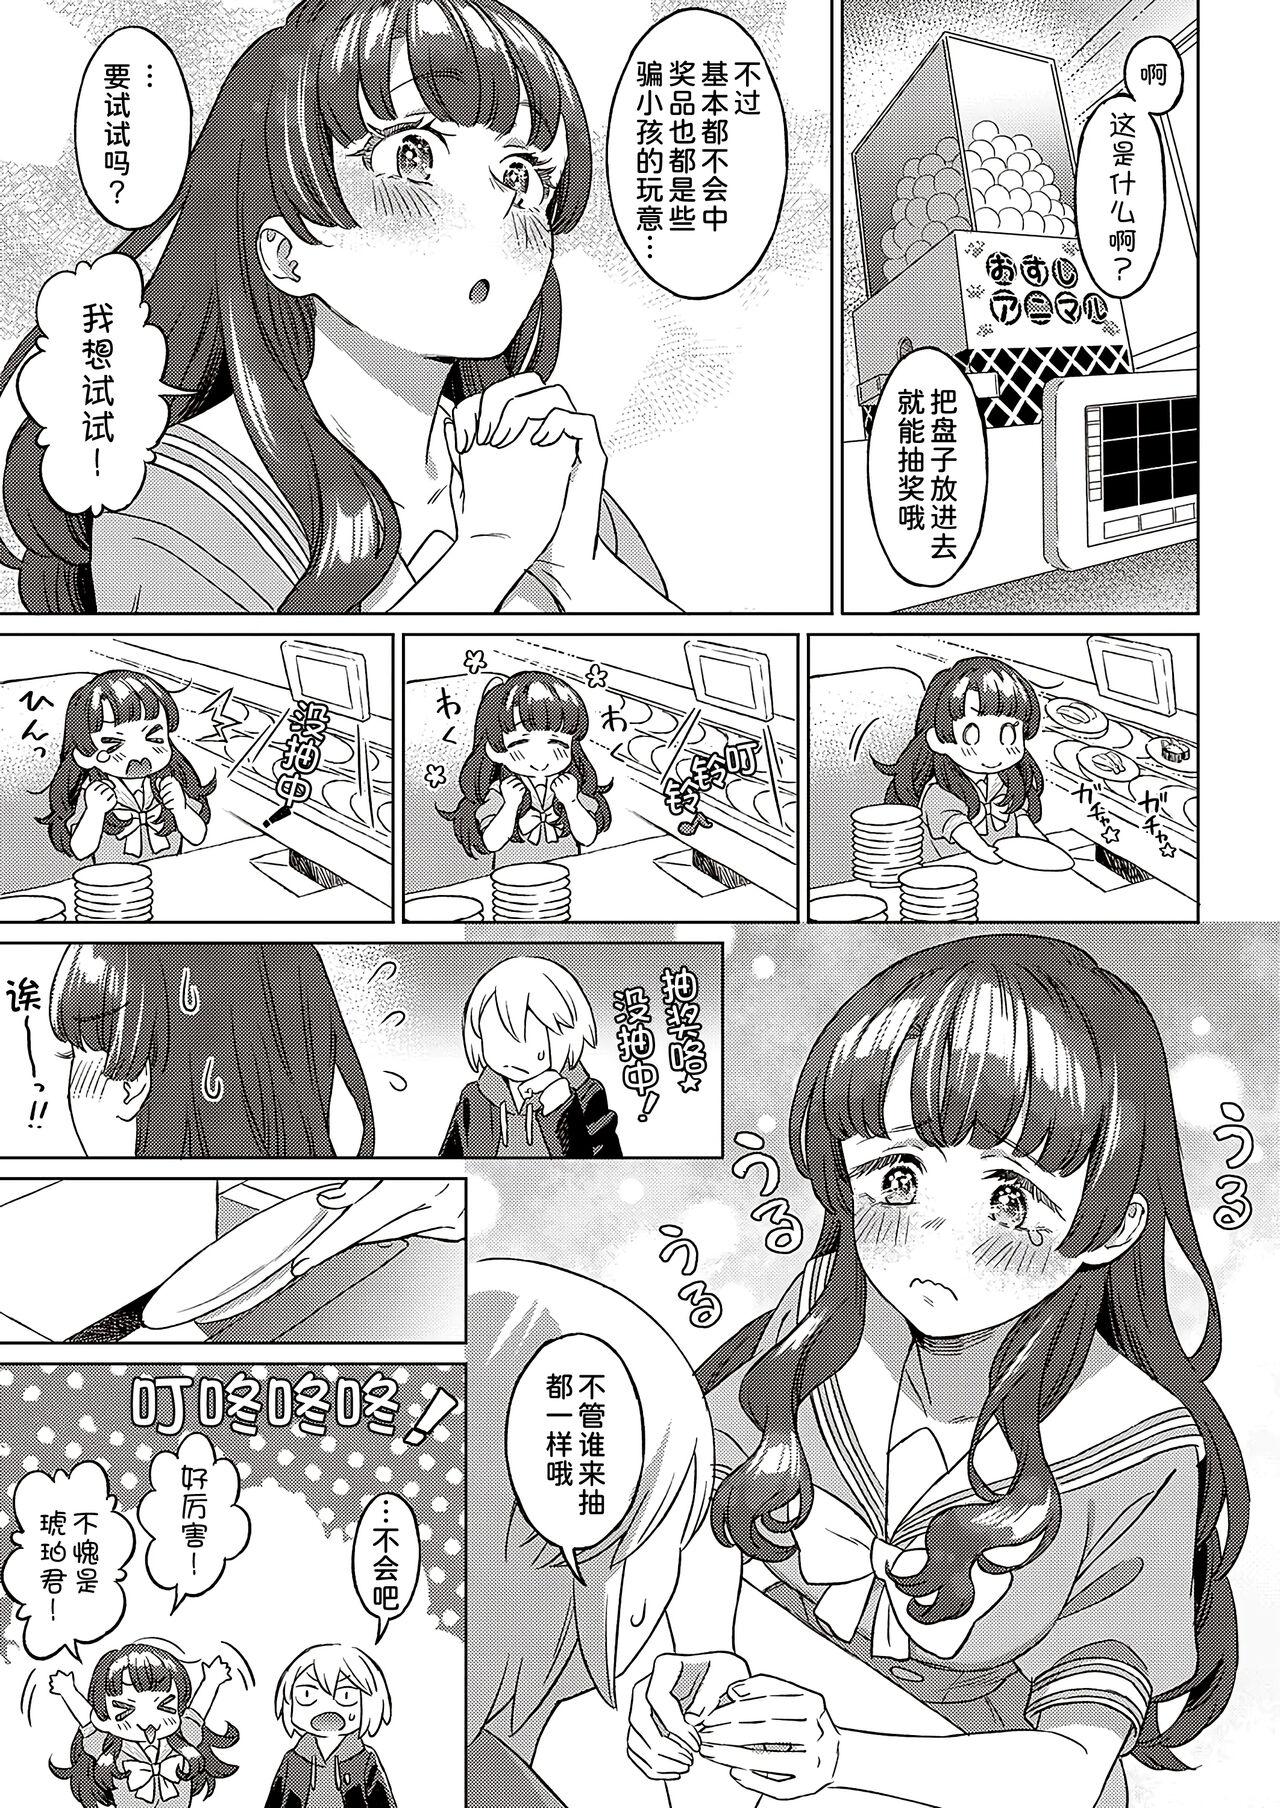 Slapping Kohakuiro no Machi, Sakura ga Ita Kisetsu Condom - Page 6